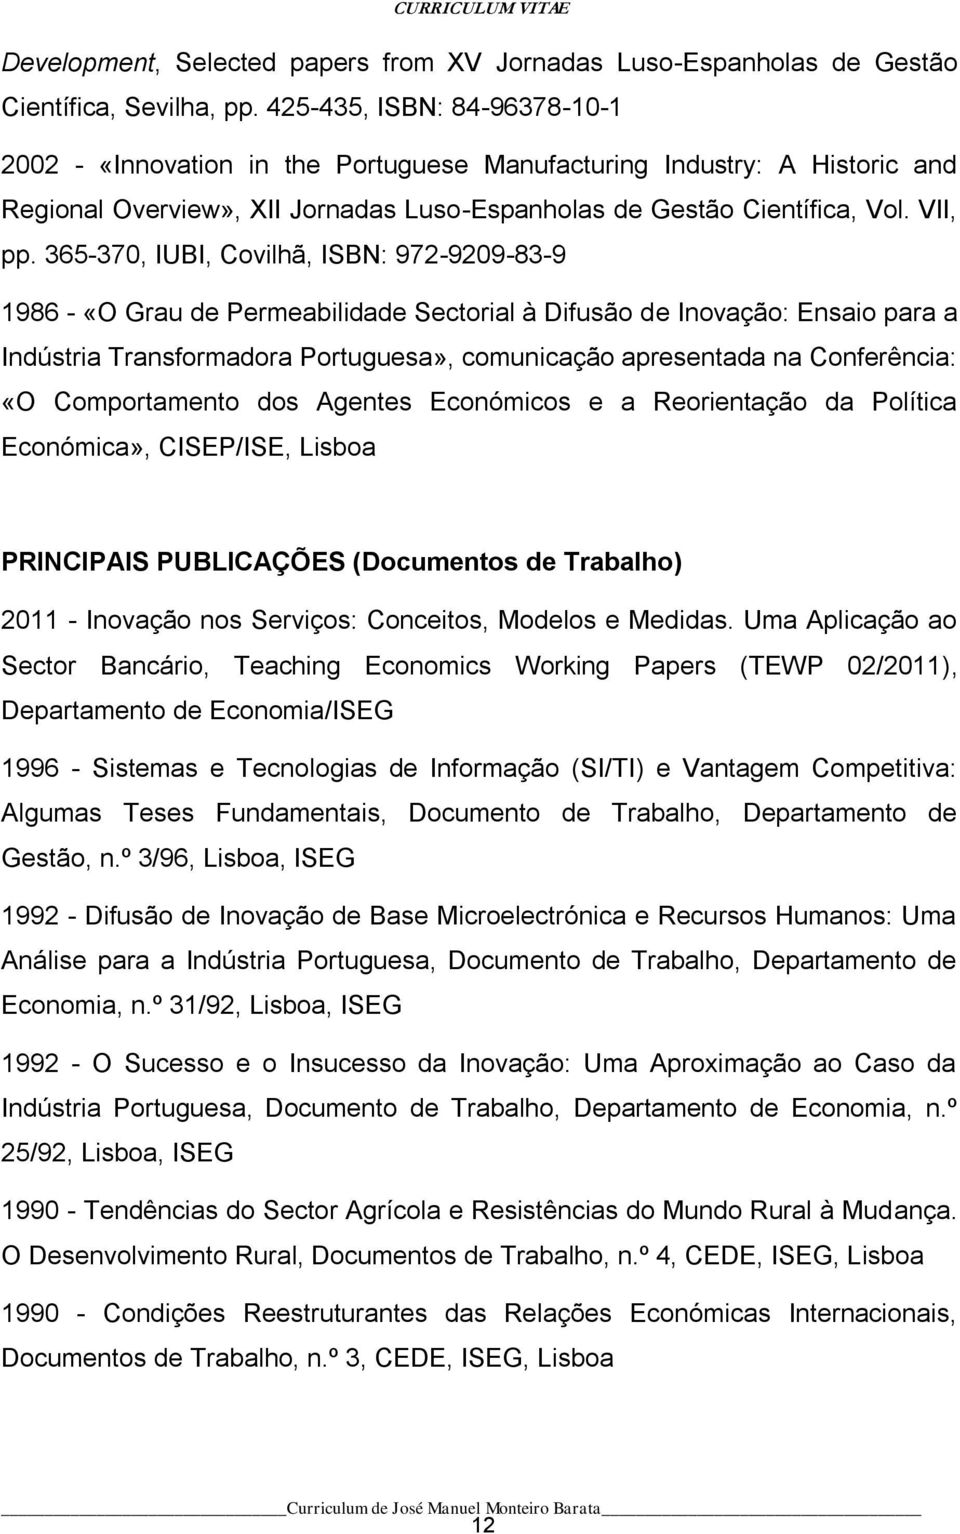 365-370, IUBI, Covilhã, ISBN: 972-9209-83-9 1986 - «O Grau de Permeabilidade Sectorial à Difusão de Inovação: Ensaio para a Indústria Transformadora Portuguesa», comunicação apresentada na